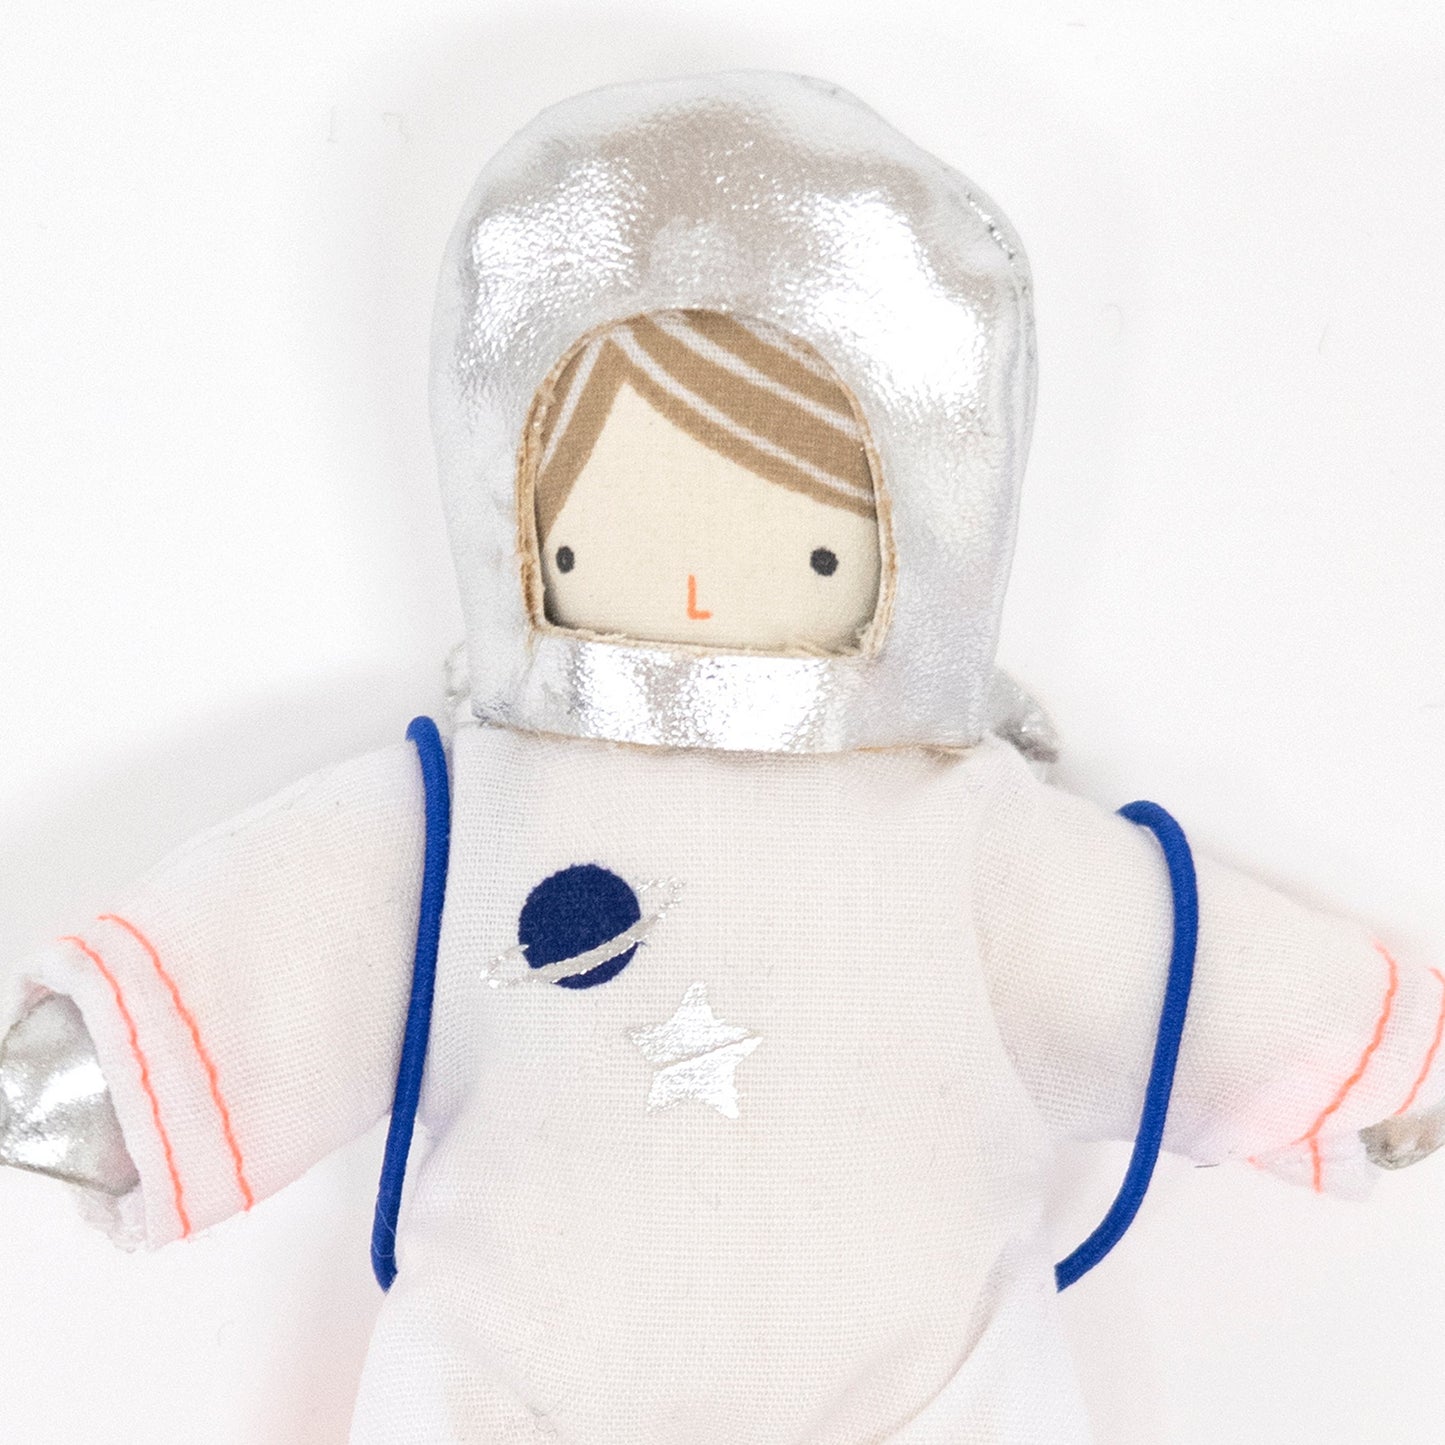 Astronaut Mini Suitcase